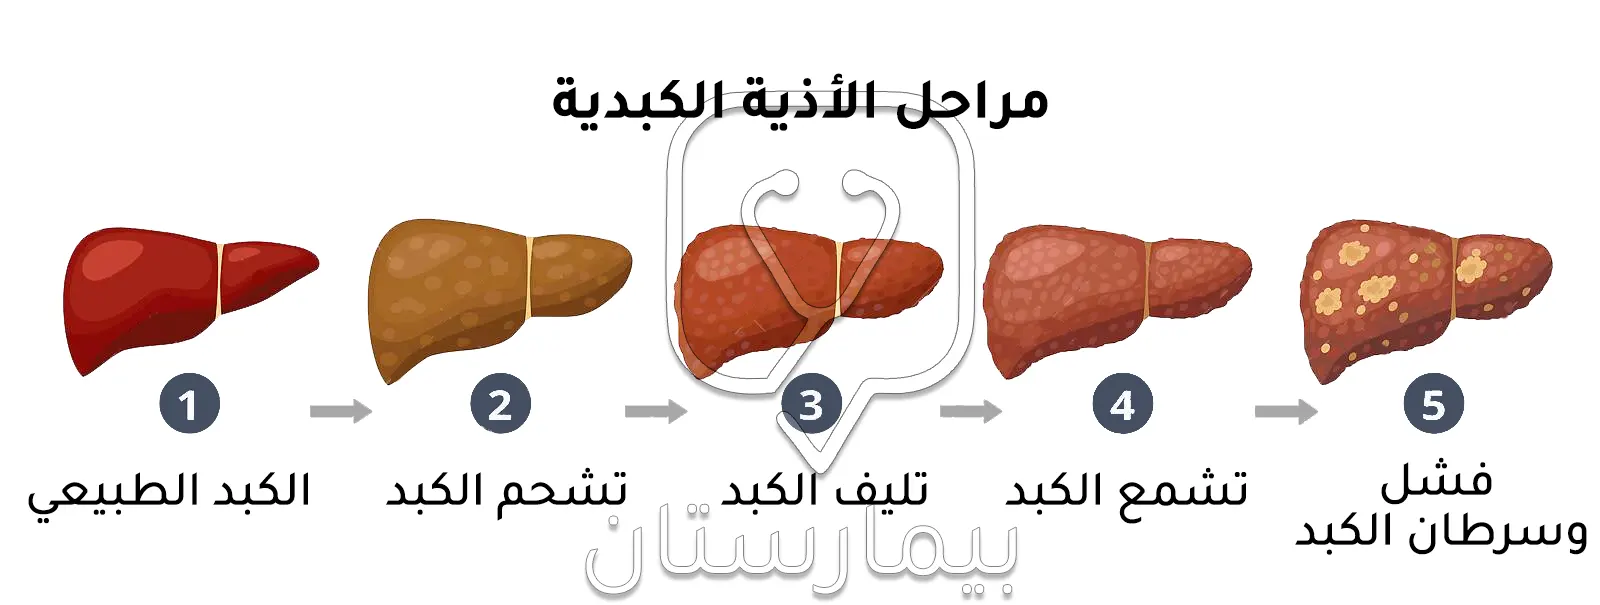 صورة توضح مراحل الأذية الكبدية التي تستوجب علاج تليف الكبد